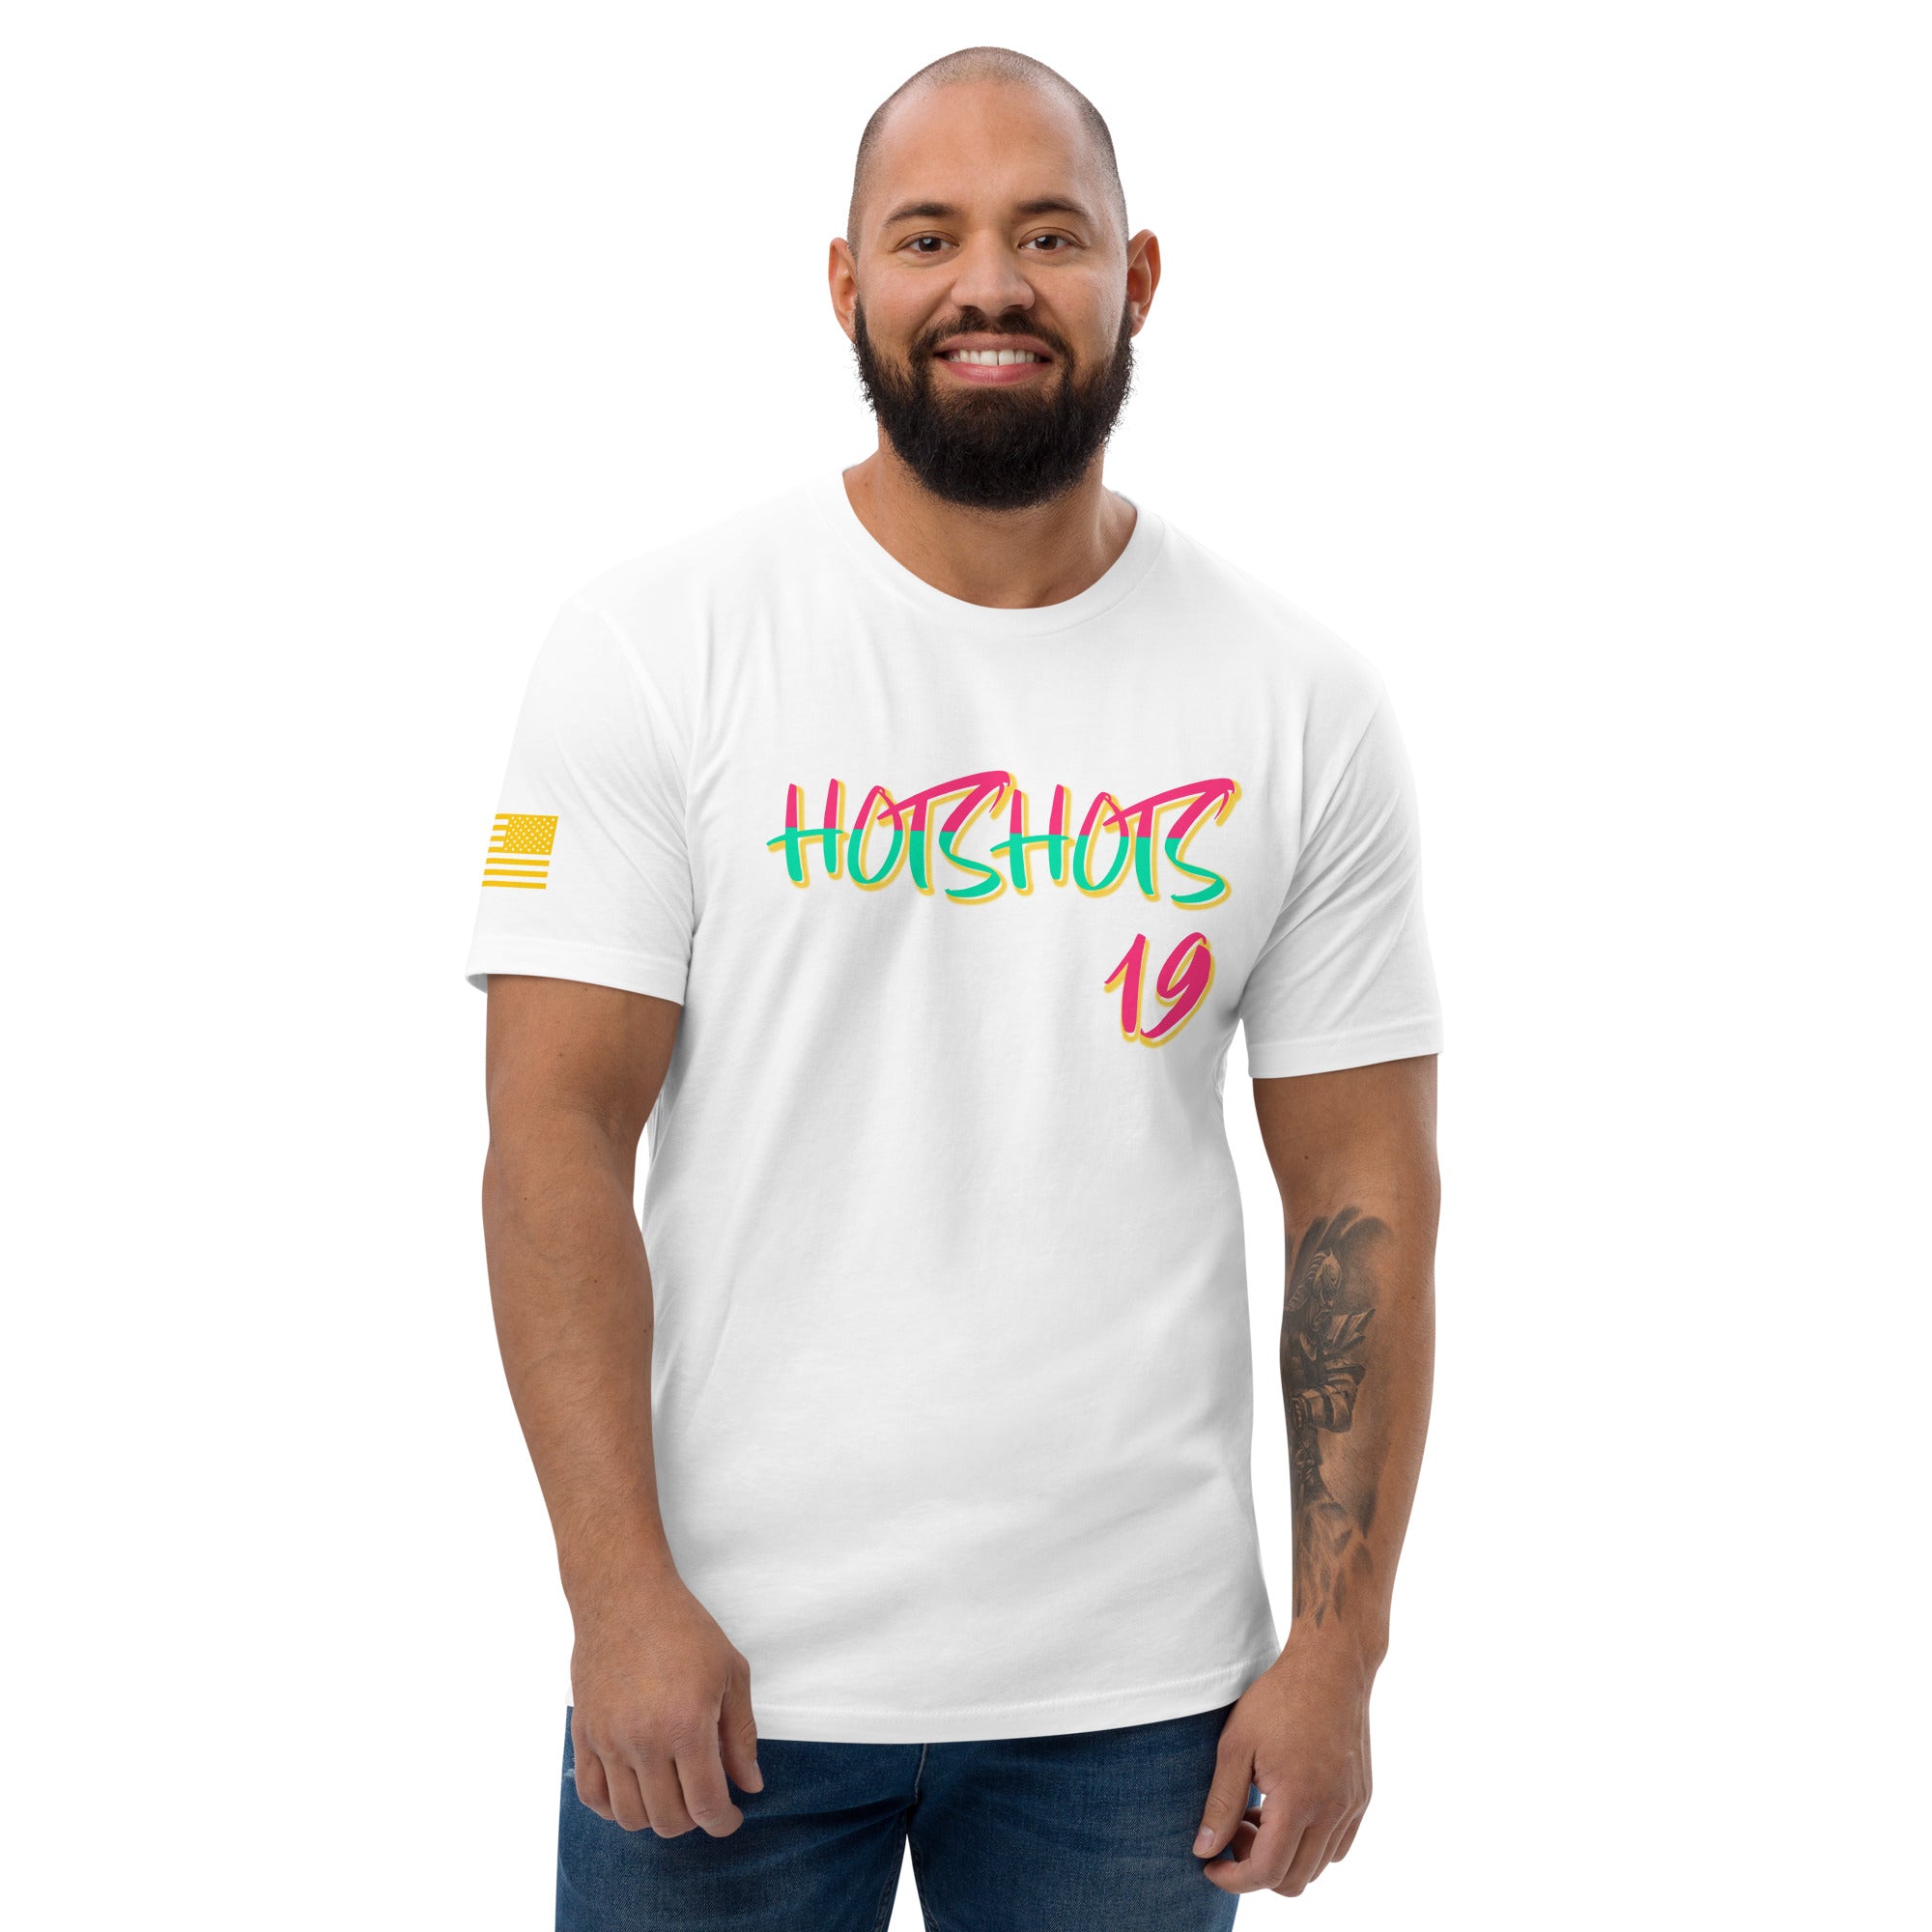 Hotshots 22 Short Sleeve T-shirt